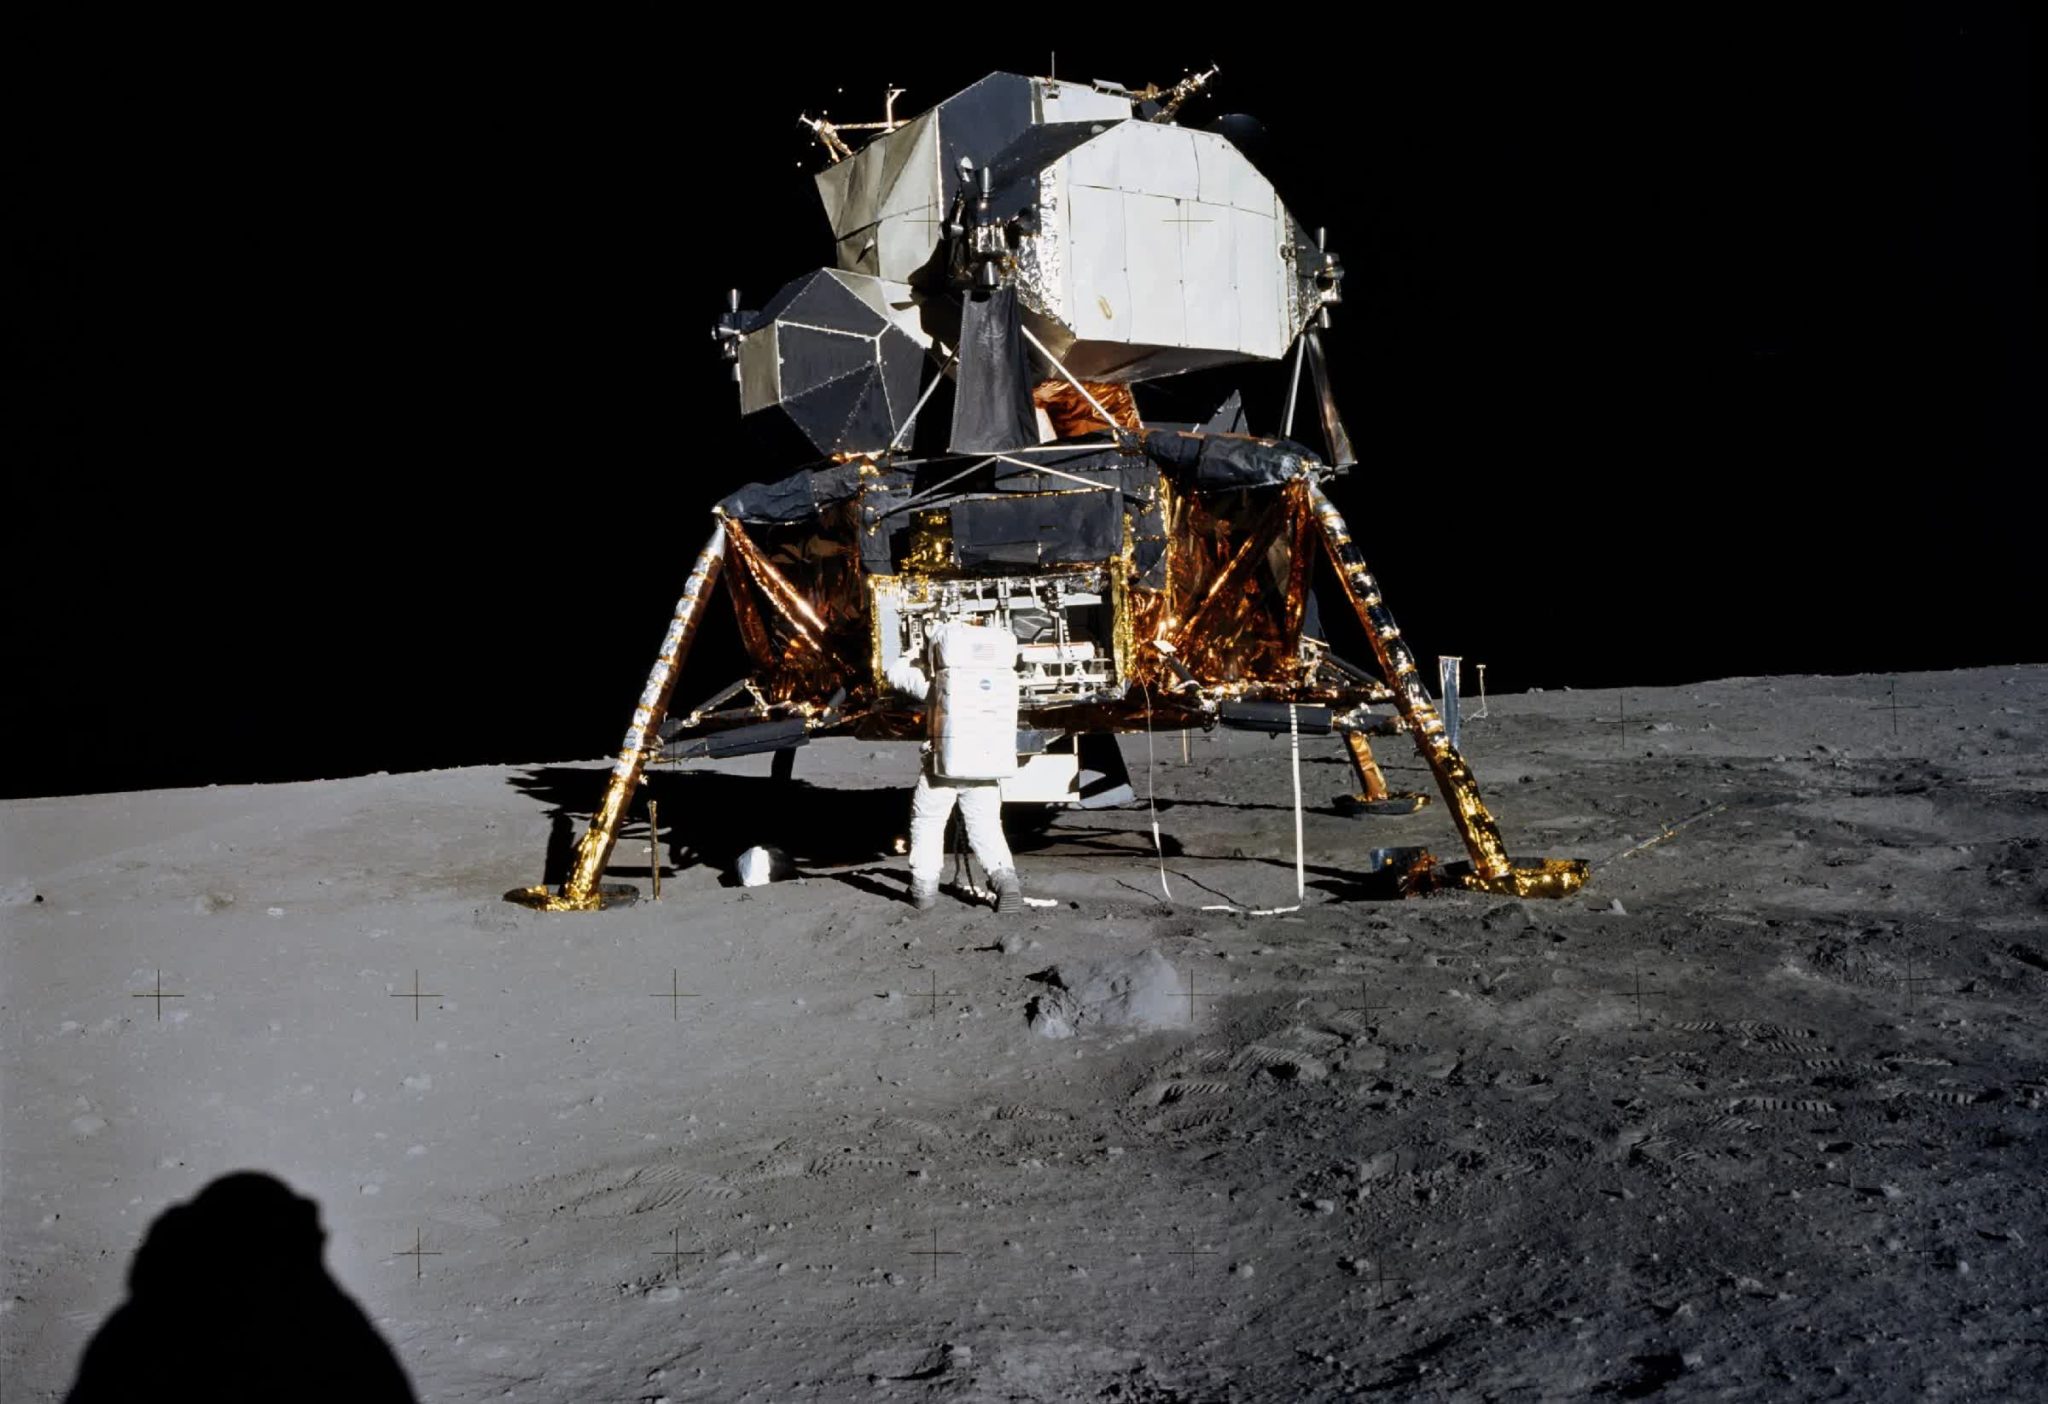 Нил Армстронг корабль Аполлон 11